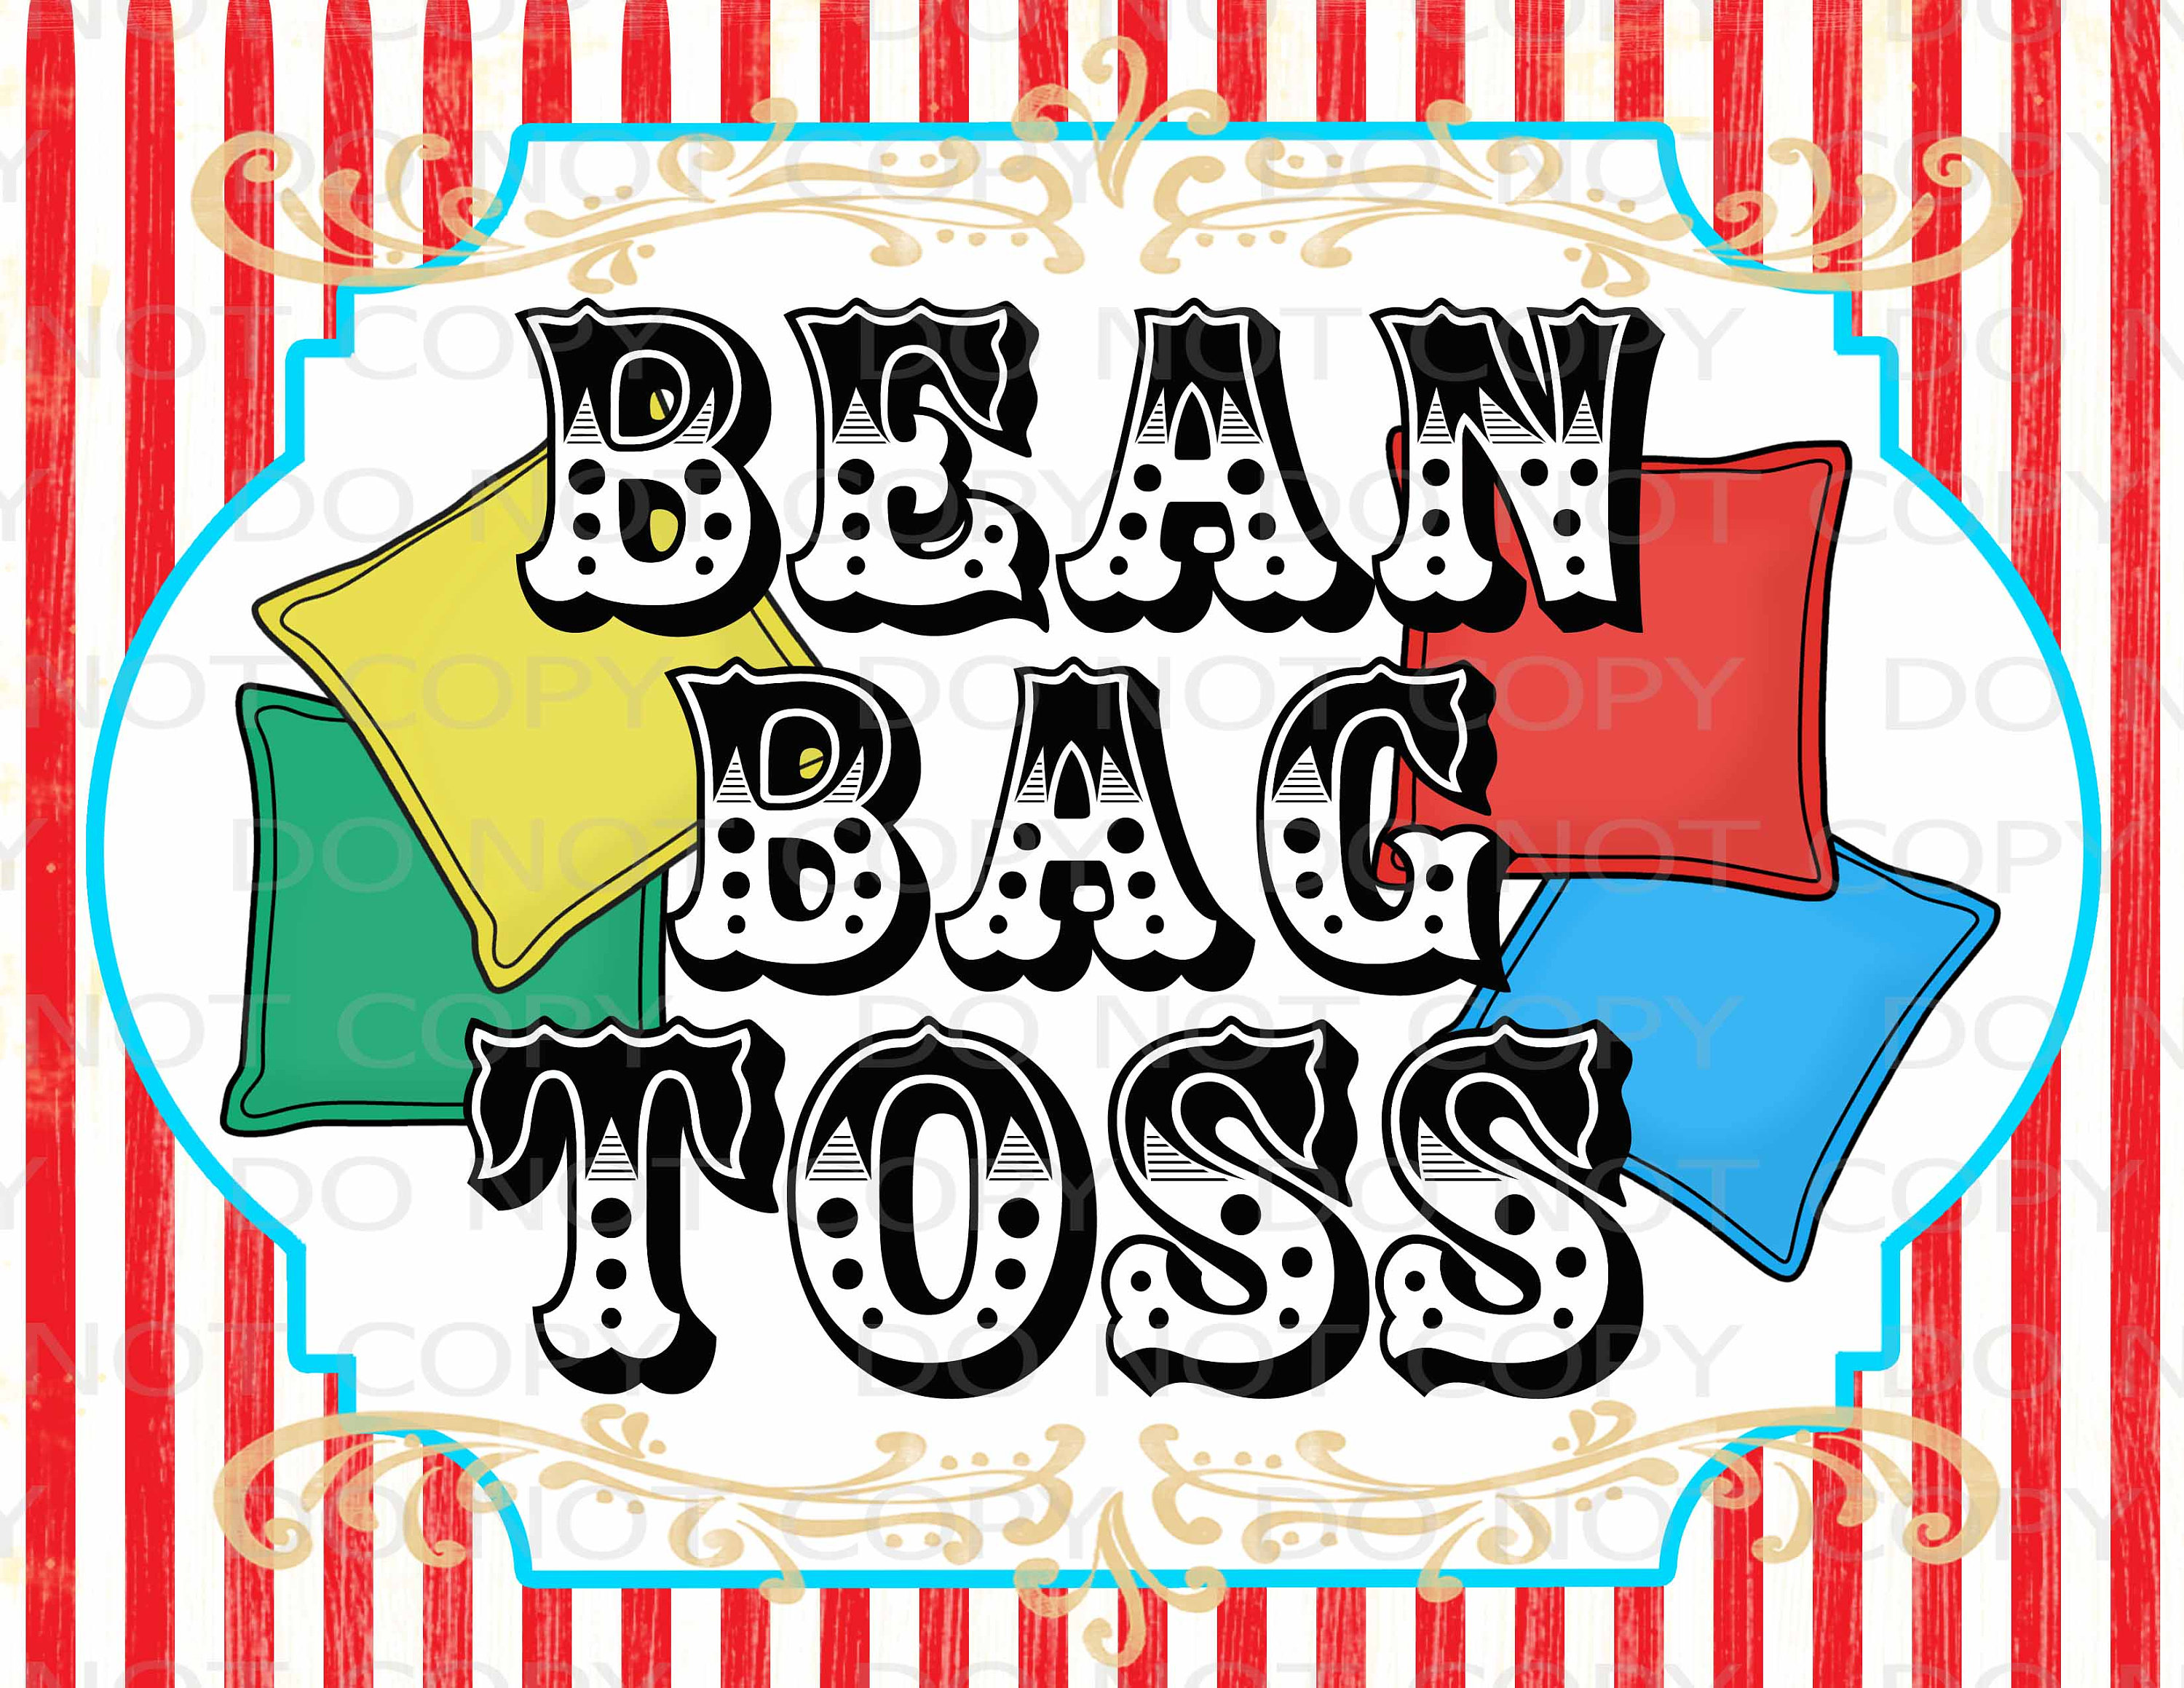 Update 148+ bean bag toss game variations best - kidsdream.edu.vn